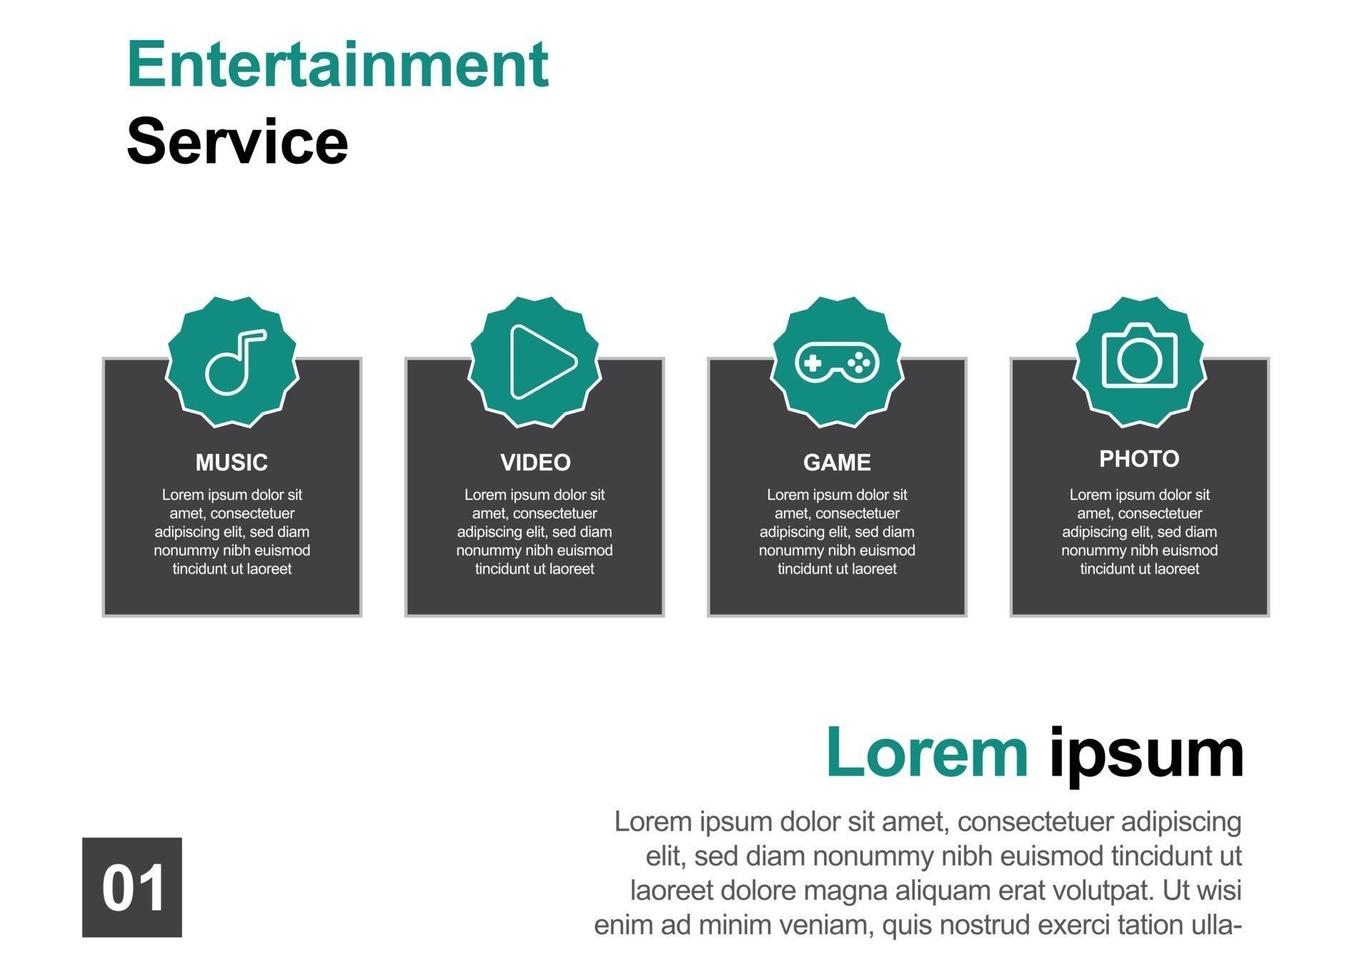 ontwerpsjabloon voor entertainmentservice, perfect voor brochures, marketingpromotie, infographics enz. vector